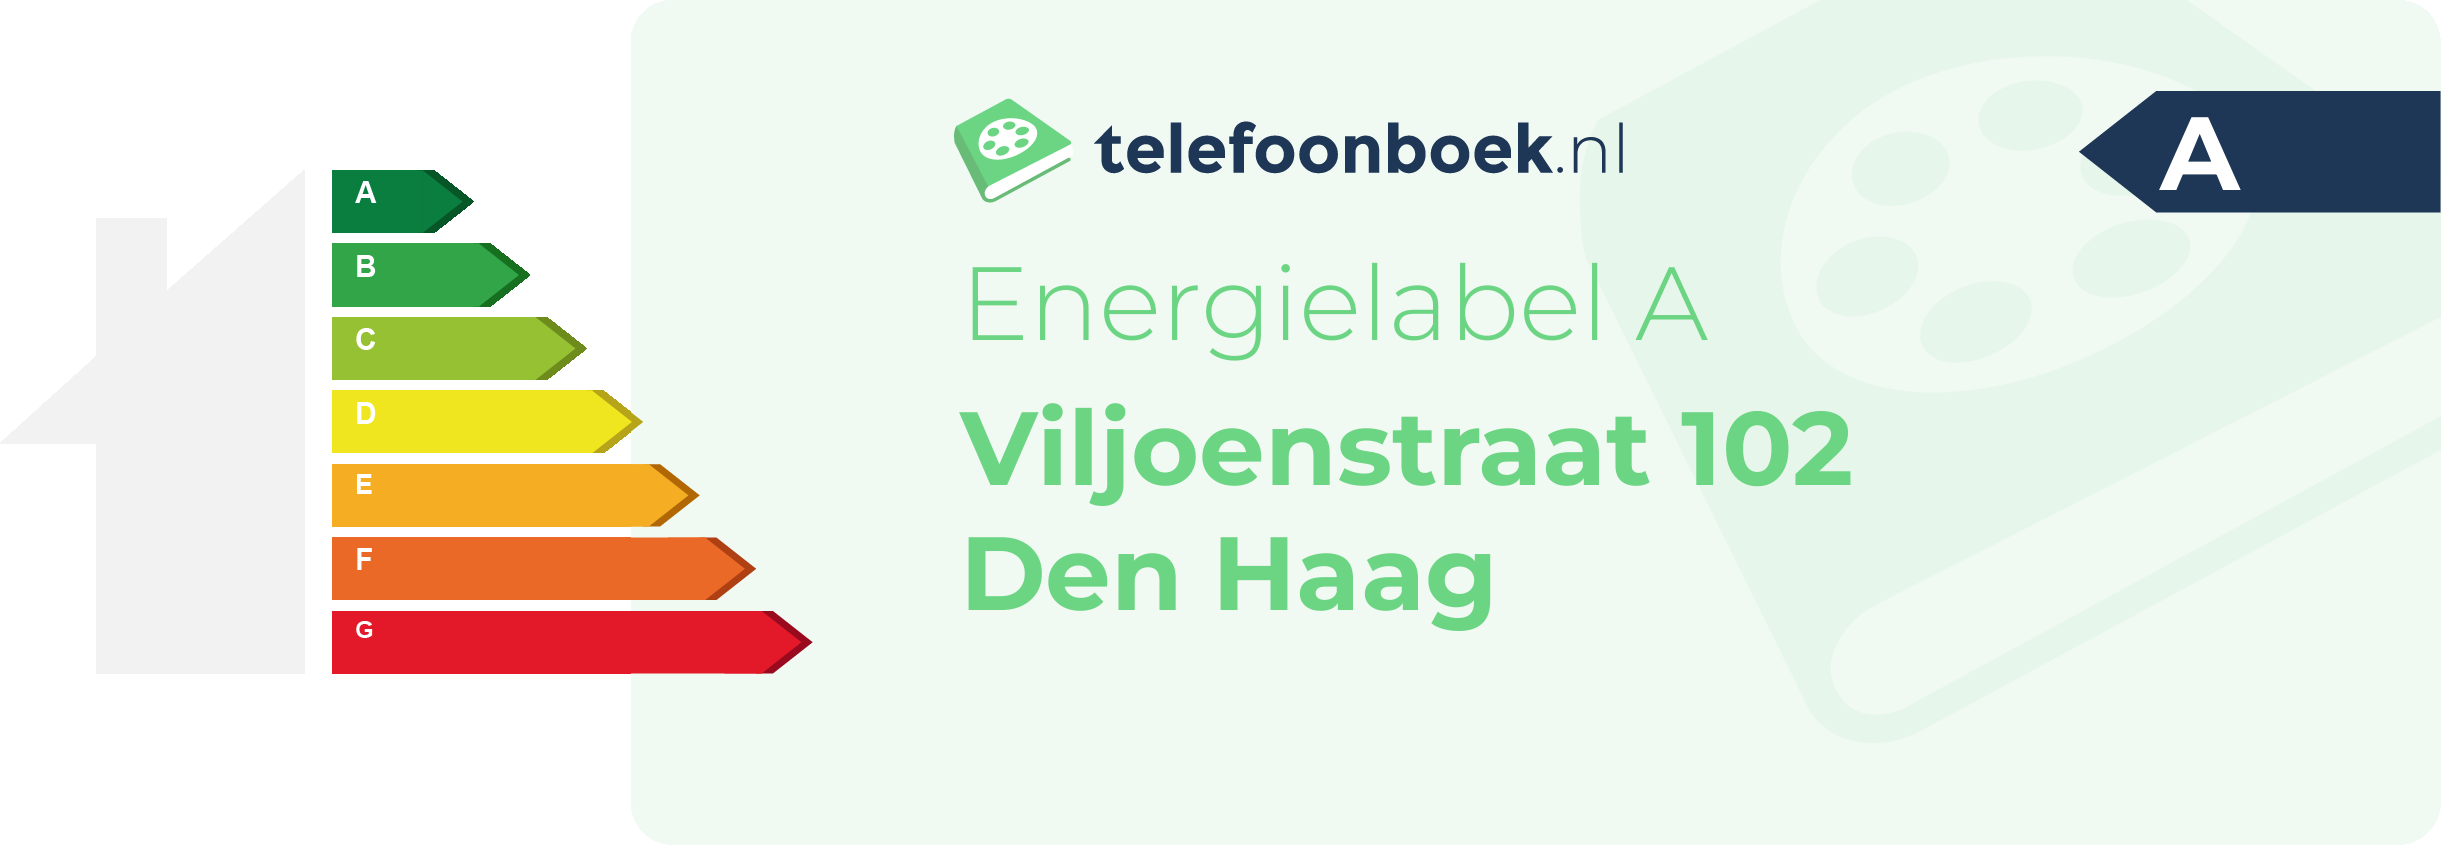 Energielabel Viljoenstraat 102 Den Haag